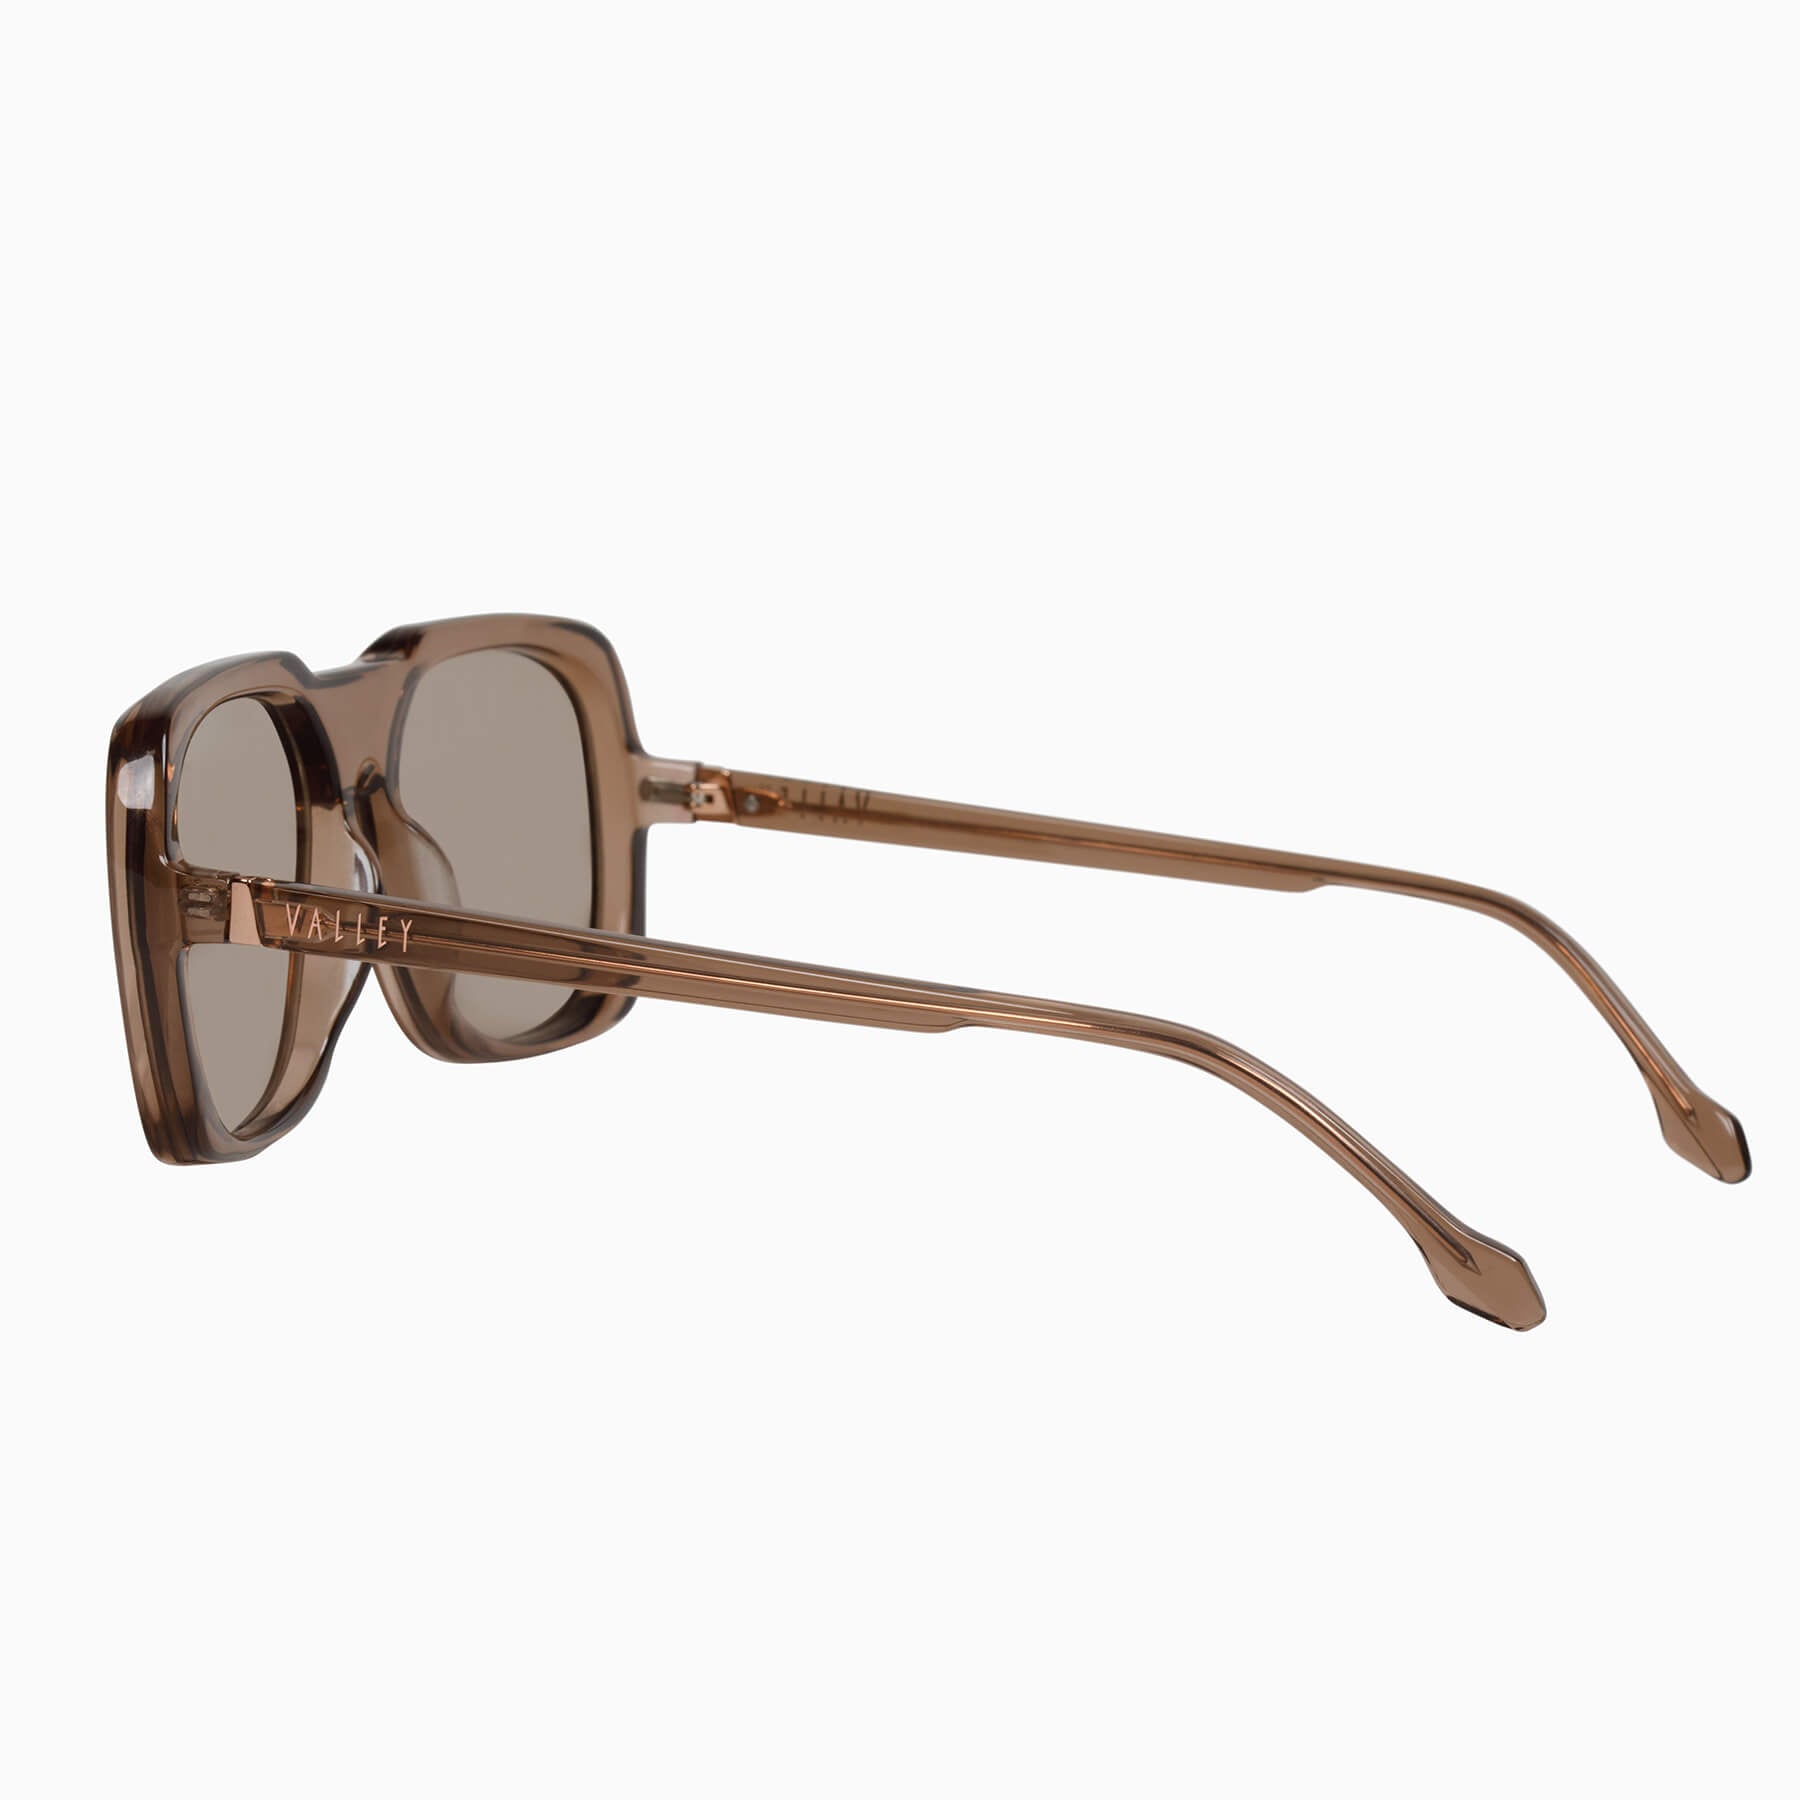 Memoir | Sunglasses - Transparent Mocha w. Rose Gold Metal Trim / Light Brown Lens